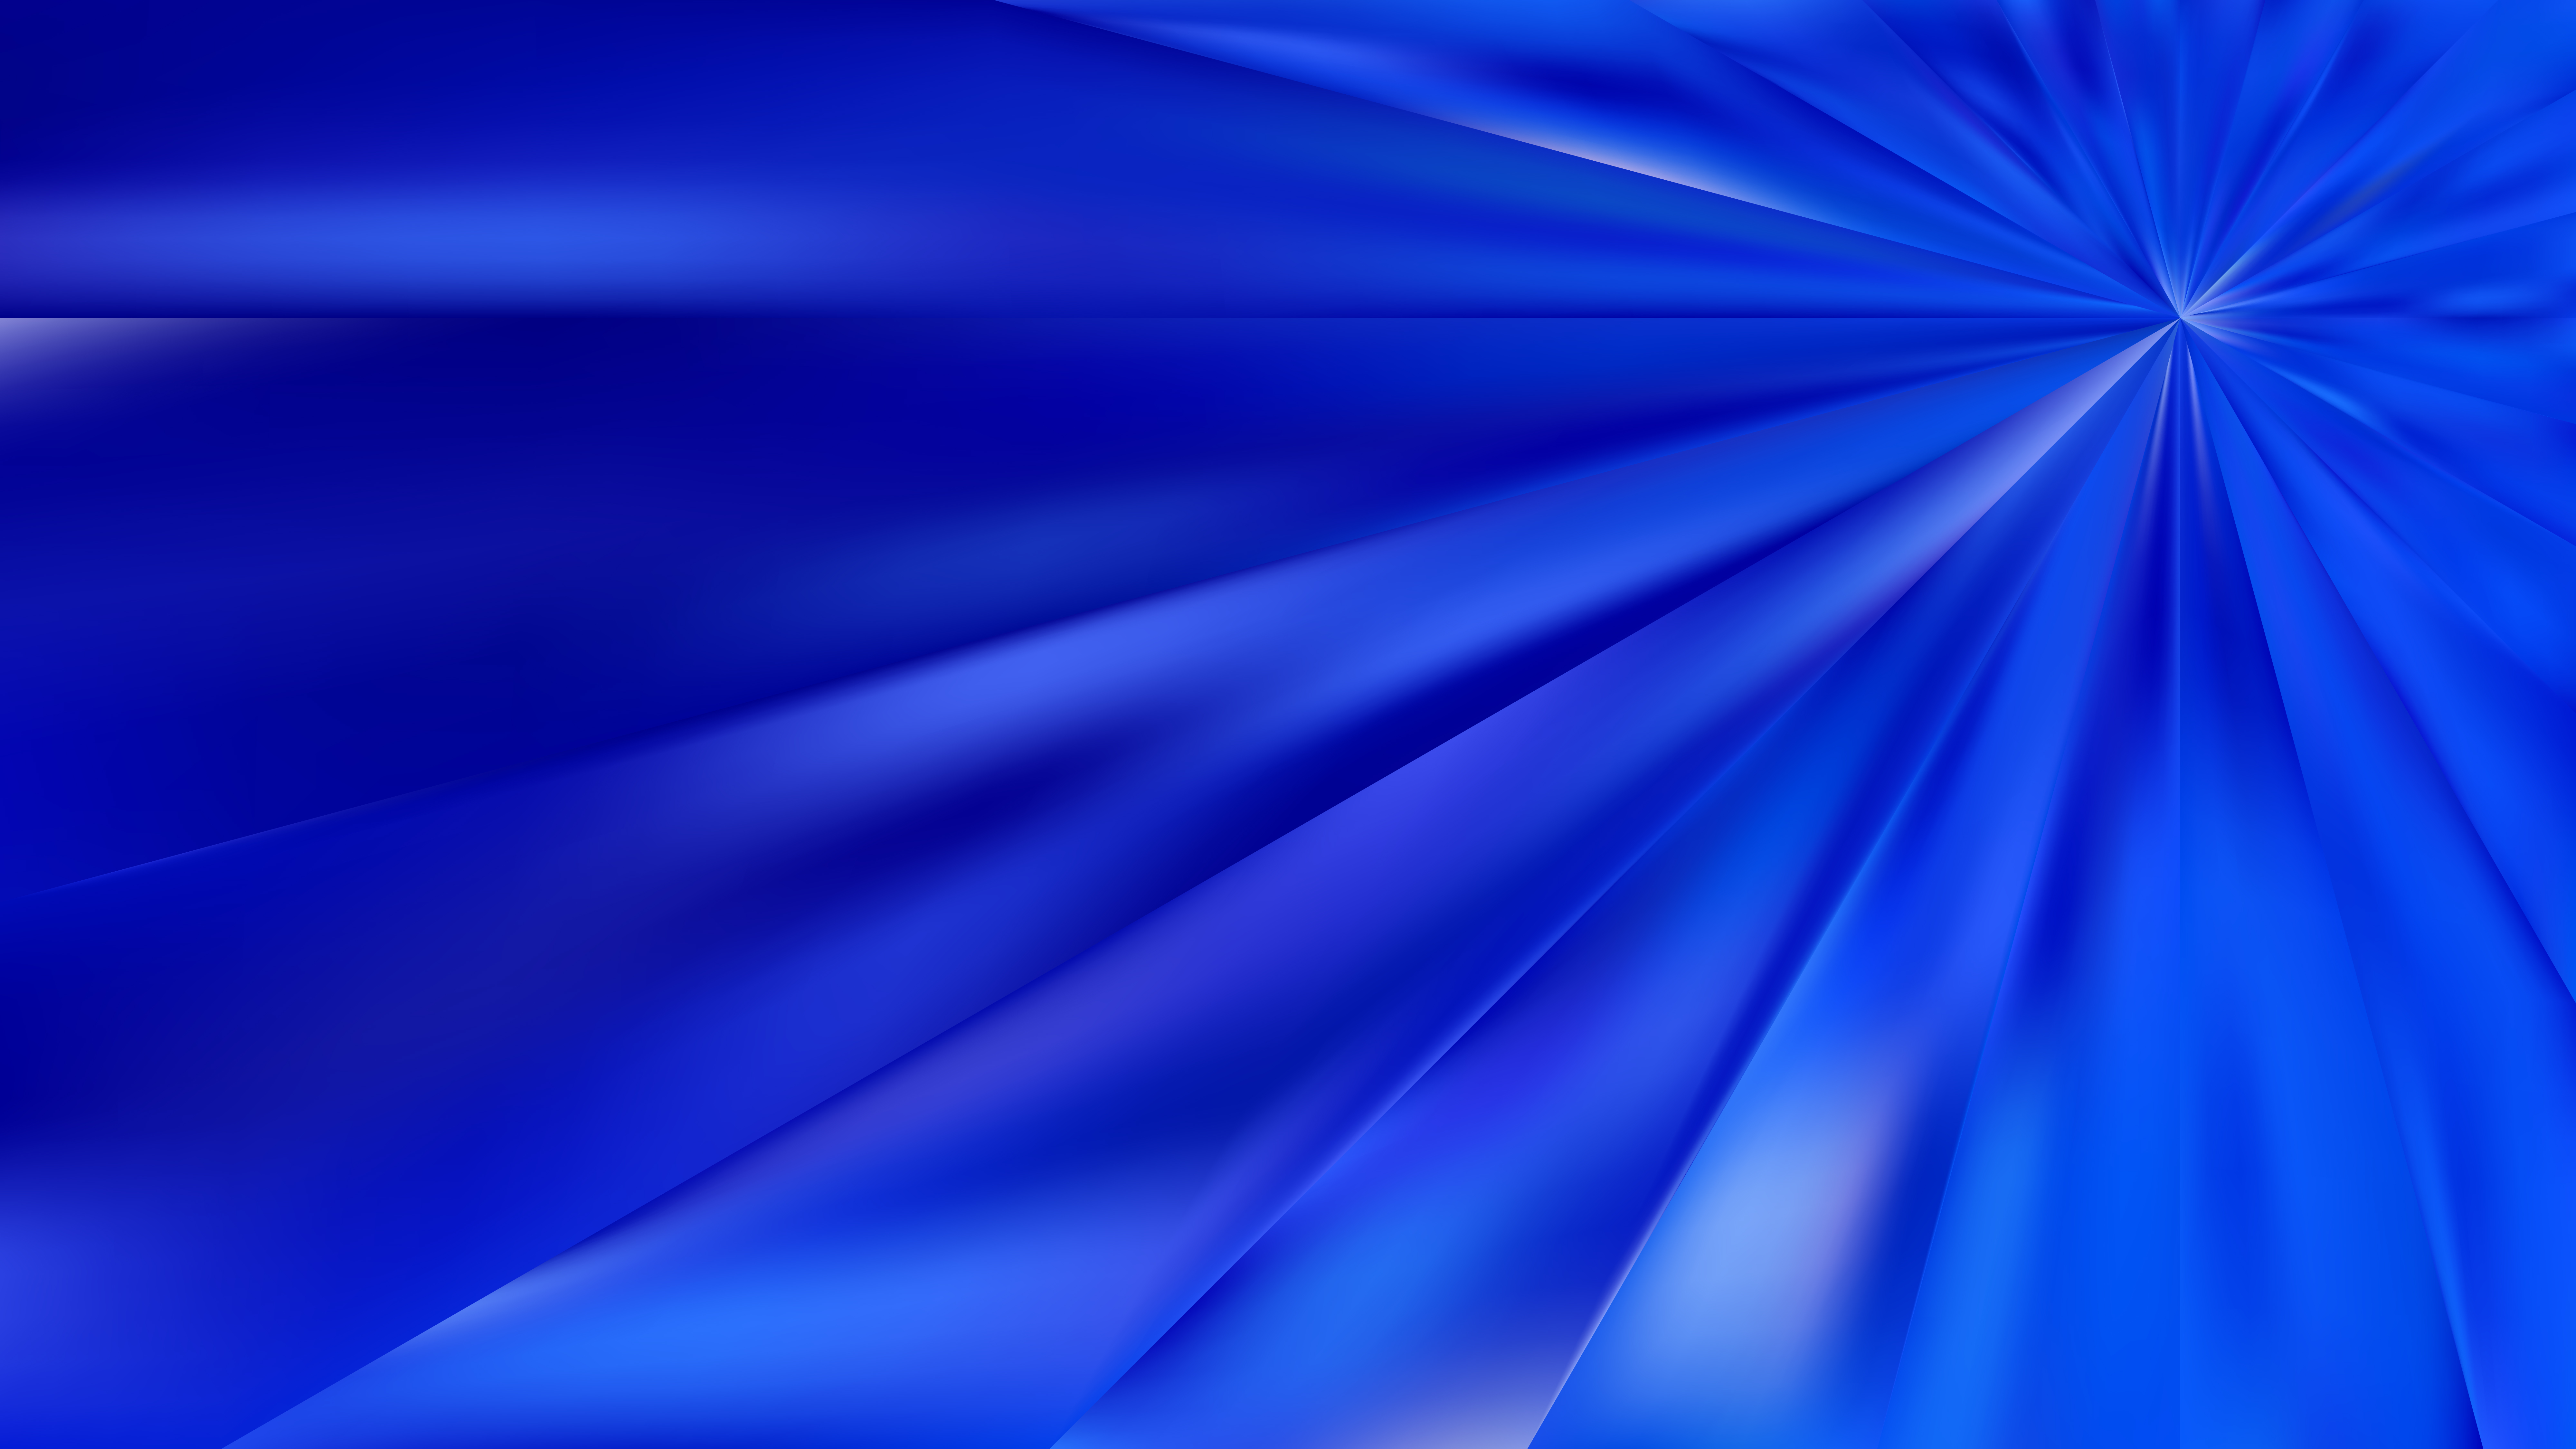 Blue Wallpapers: Free HD Download [500+ HQ] | Unsplash